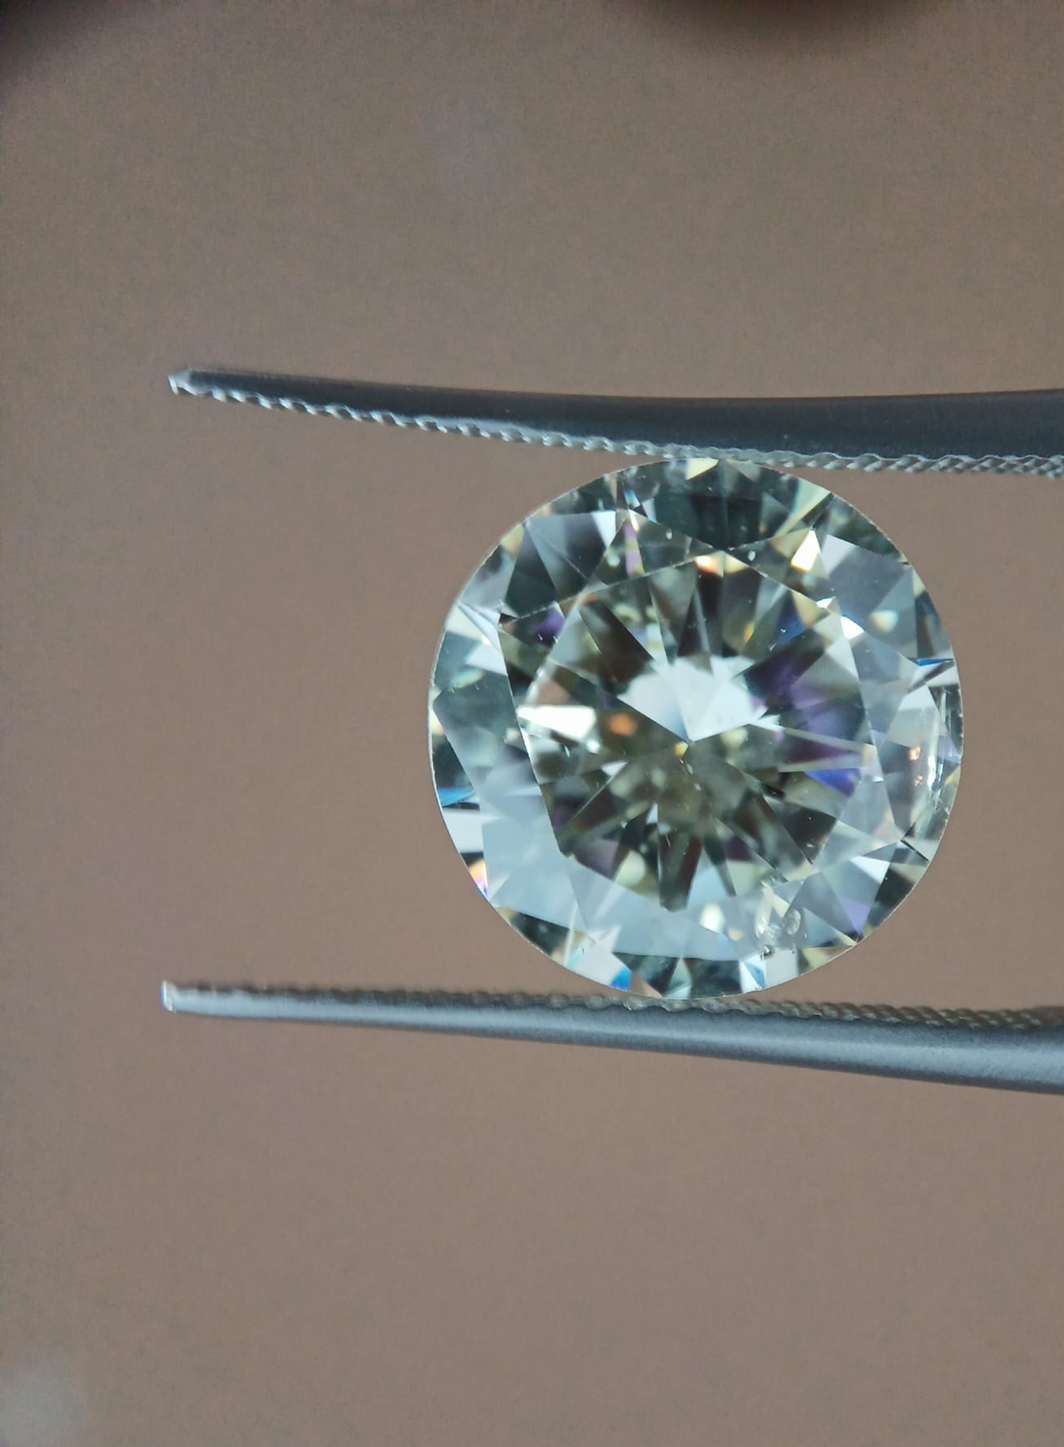 Auctentic se développe en misant sur le diamant naturel